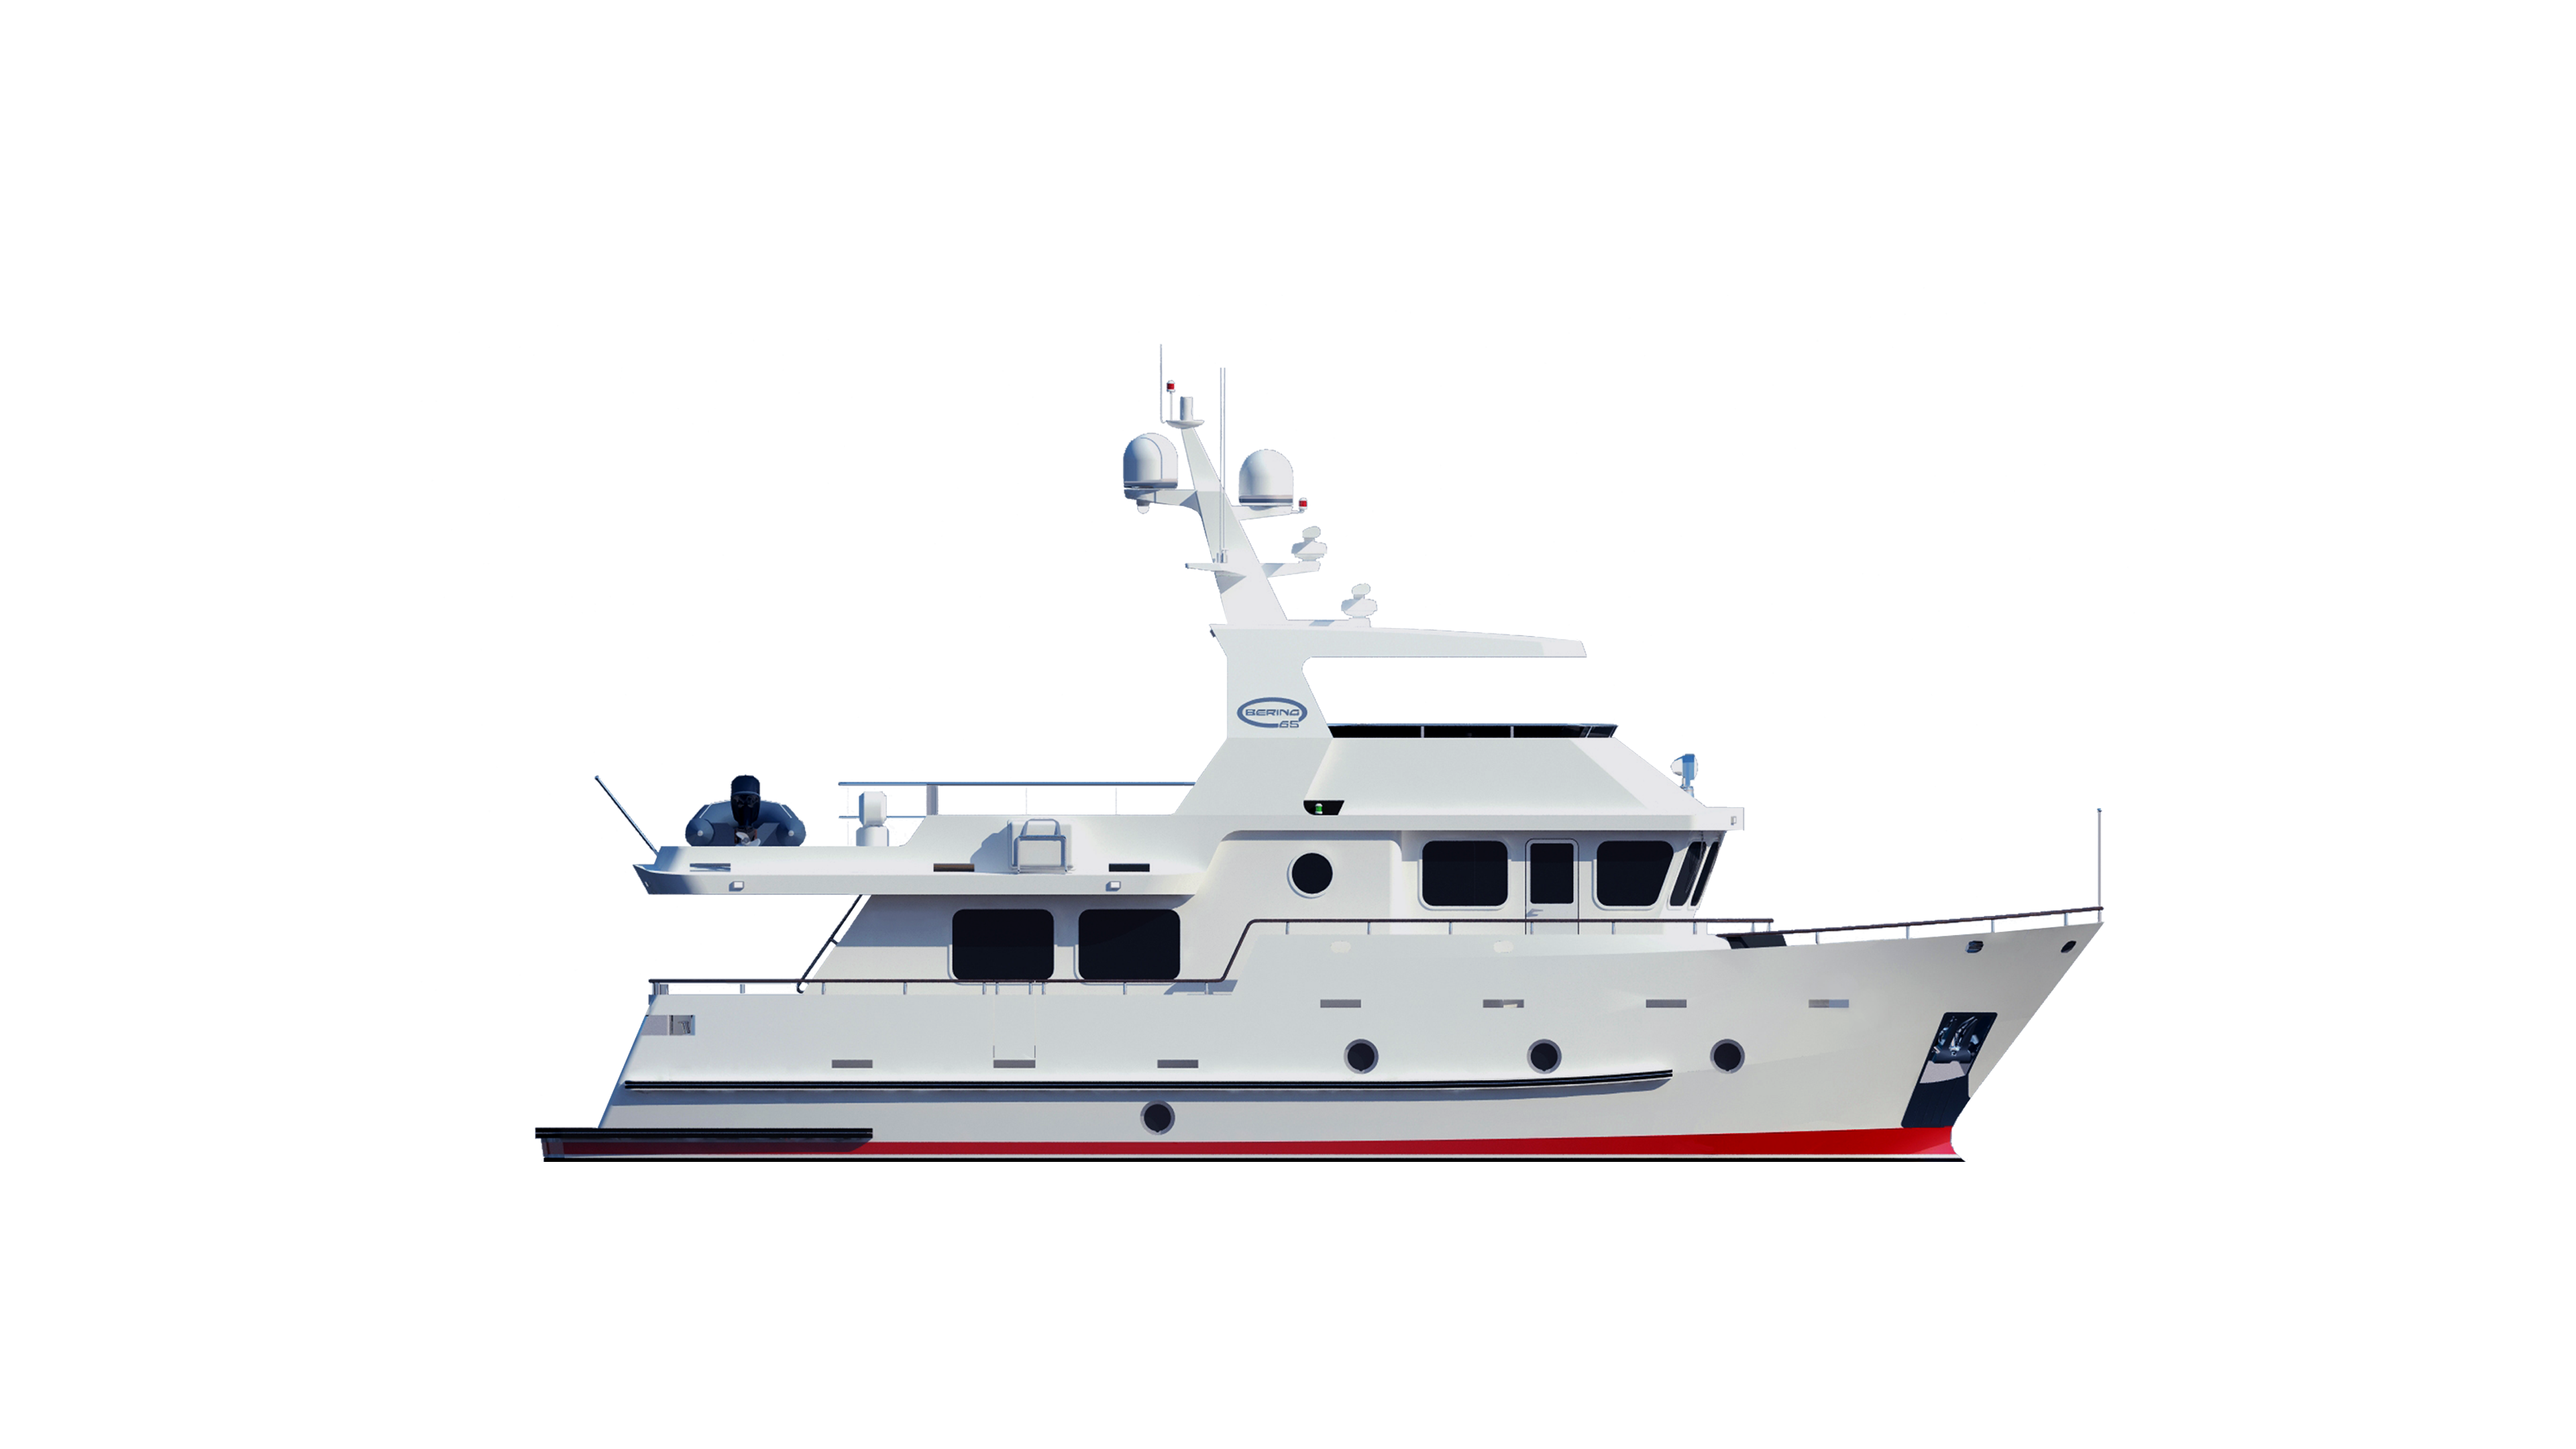 24m explorer yacht for sale